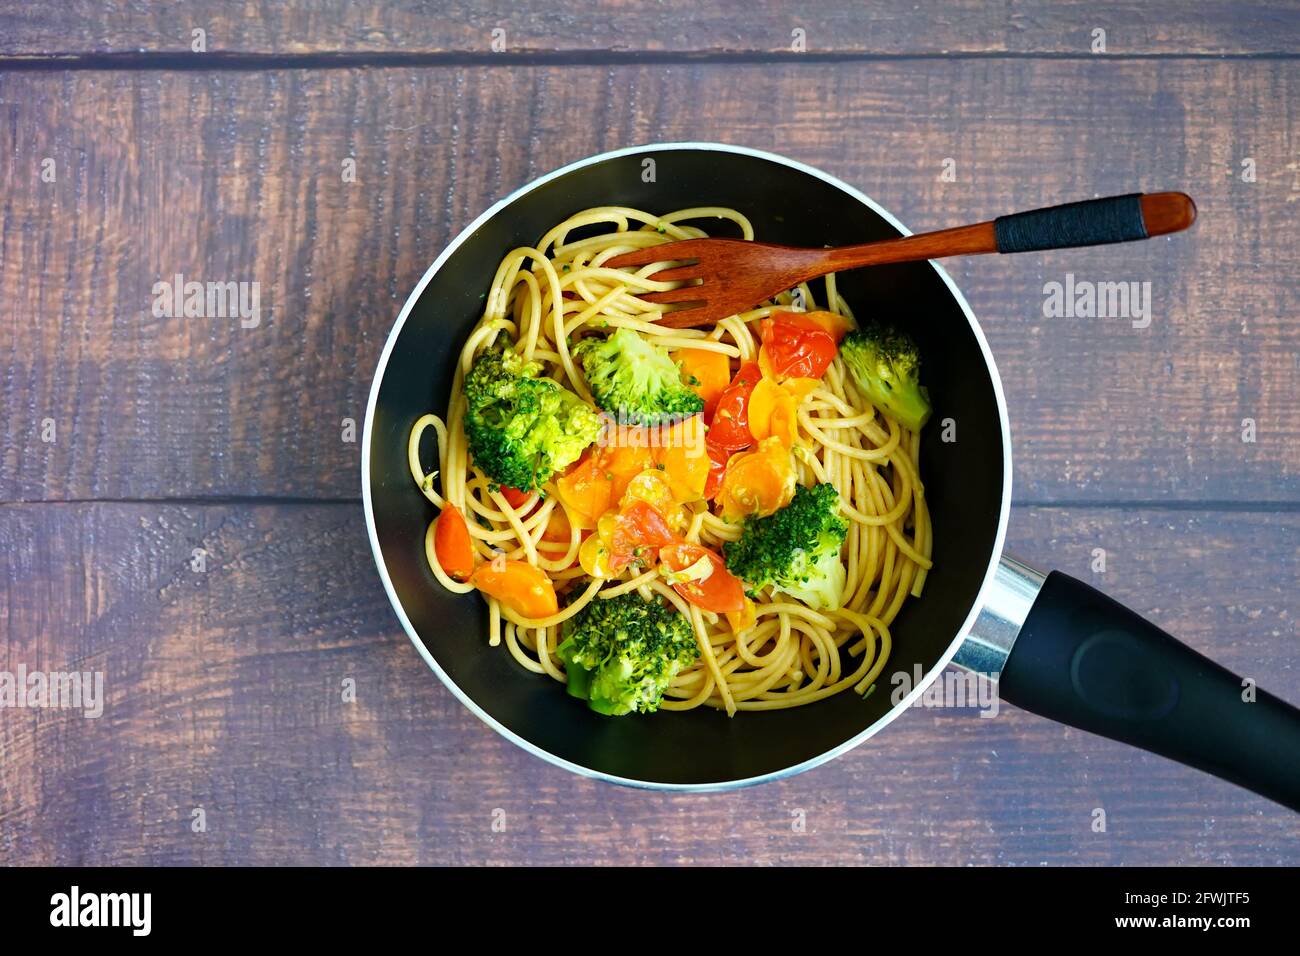 Gesunde Hausmannskost: Spagetti mit Gemüse (Brokkoli, Tomaten, Karotten) in einer Pfanne mit Holzlöffel. Stockfoto